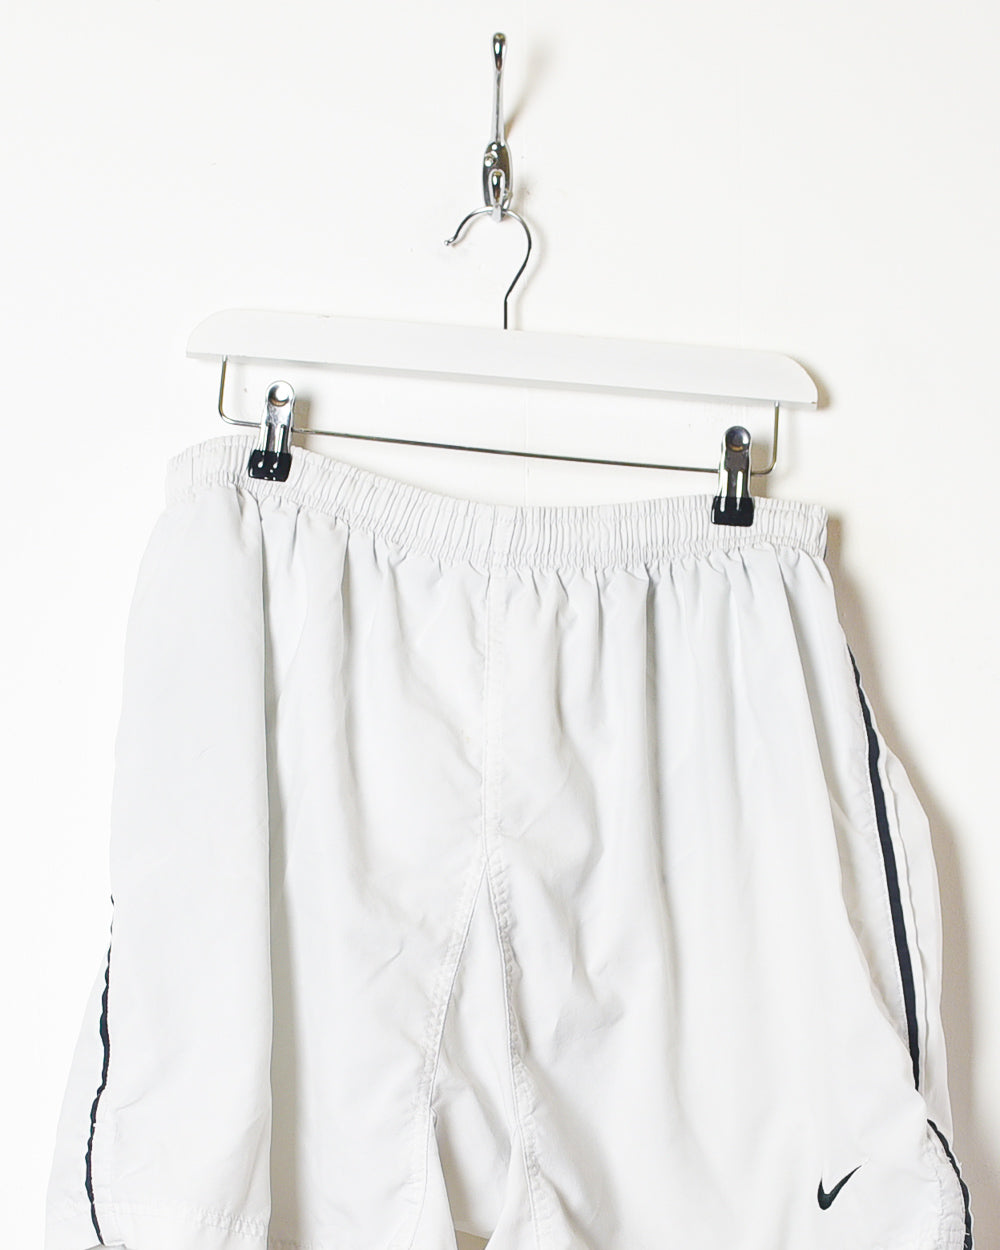 White Nike Shorts - X-Large